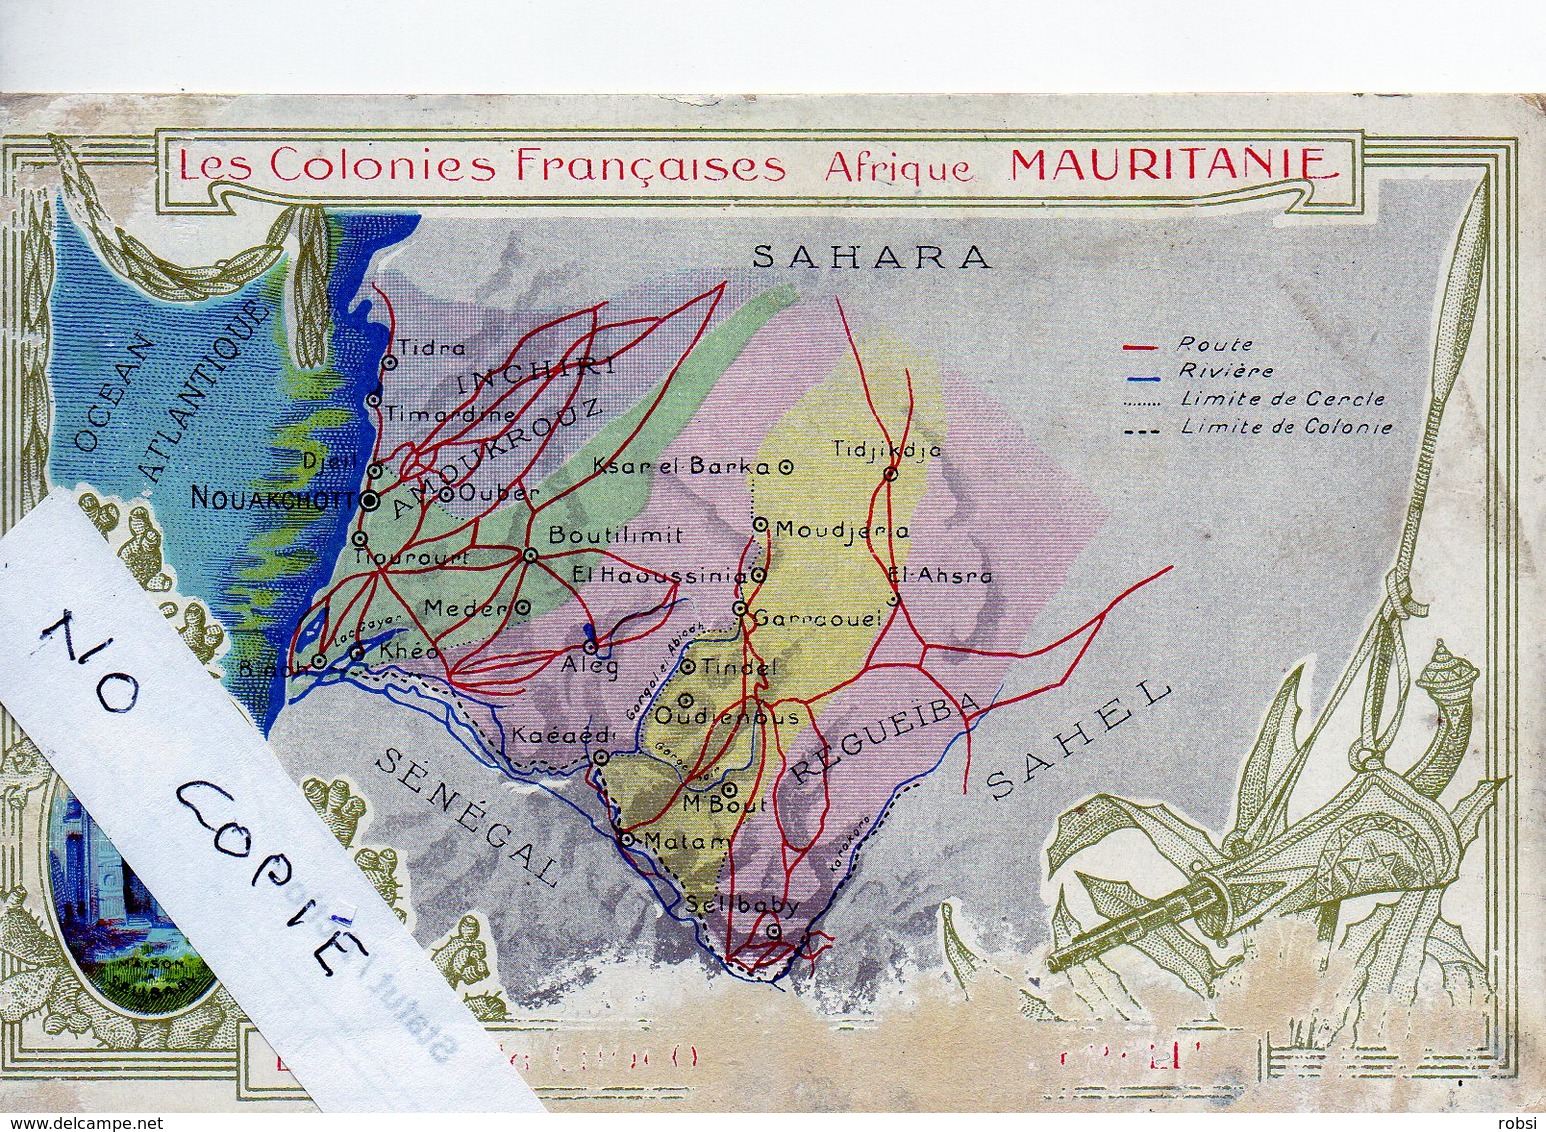 Mauritanie, Colonies Françaises, Carte Géographique - Mauritania